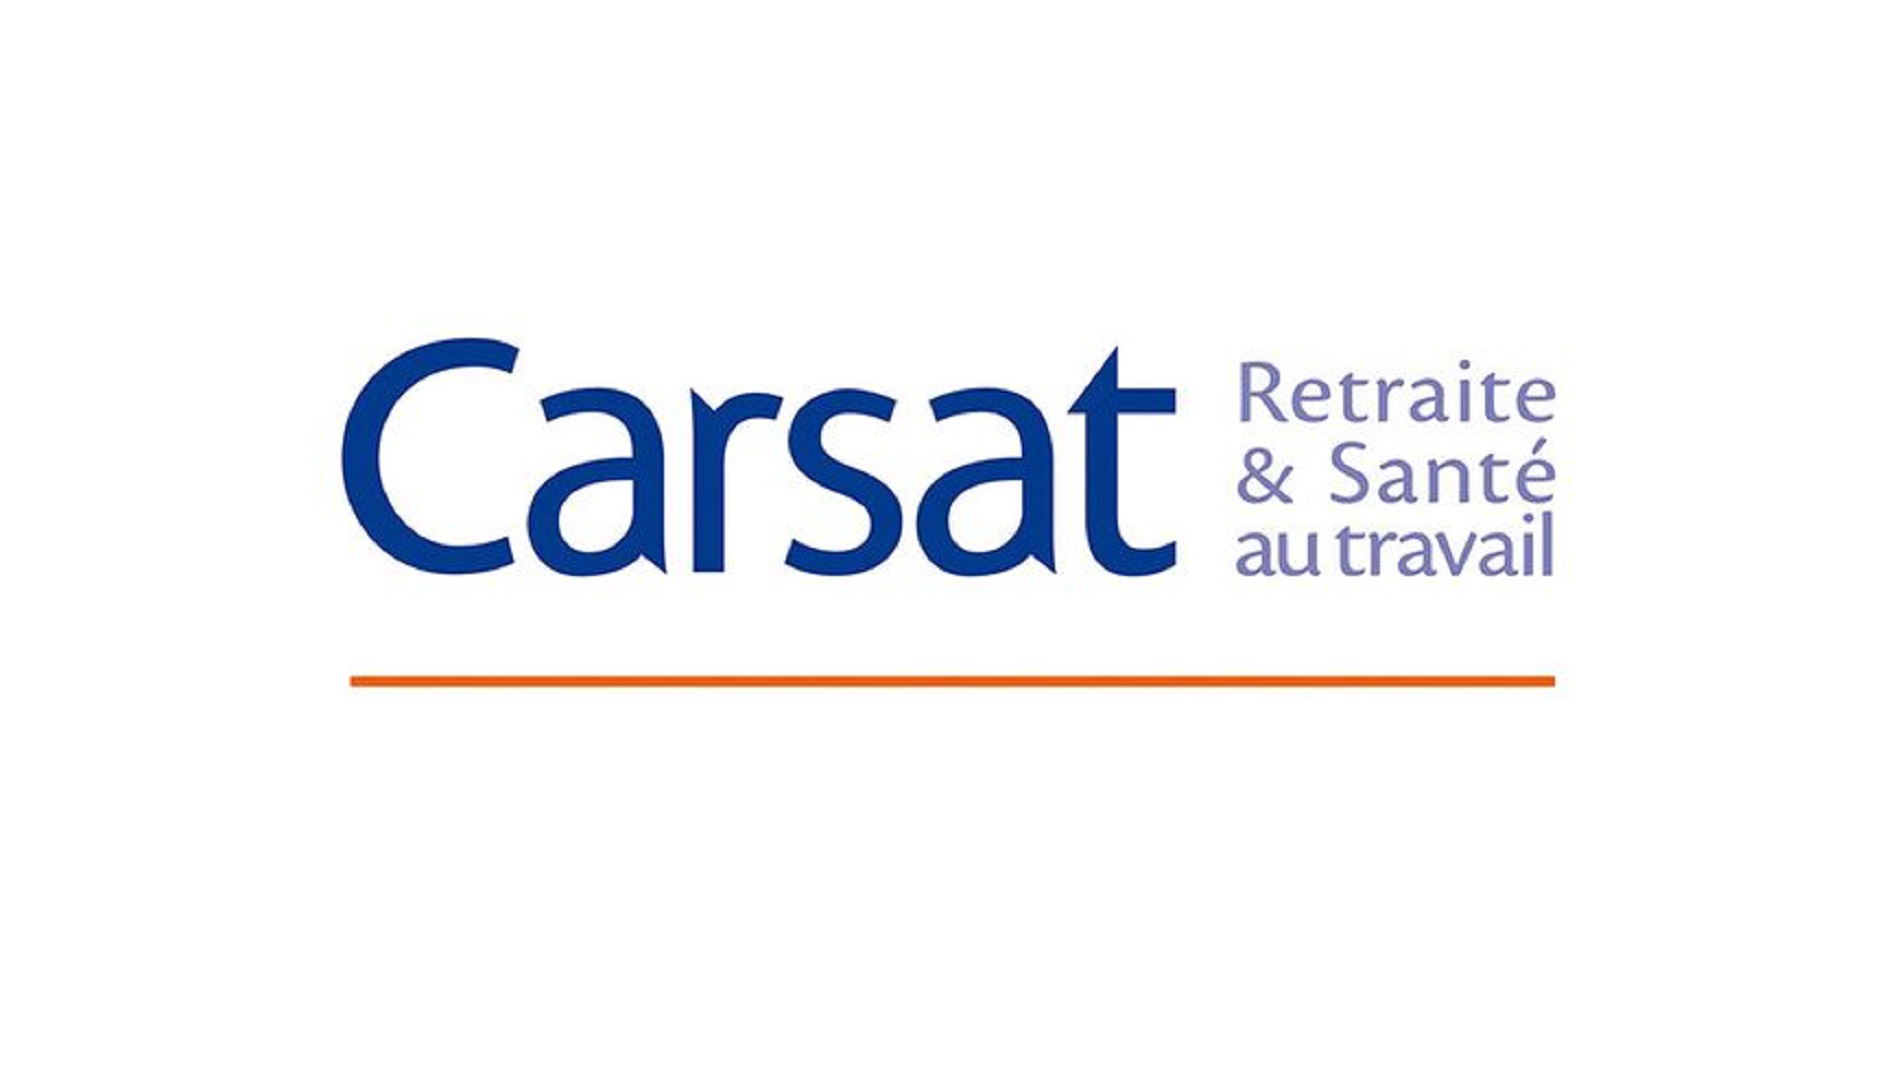 Une subvention des Carsat sur les équipements de protection Covid-19